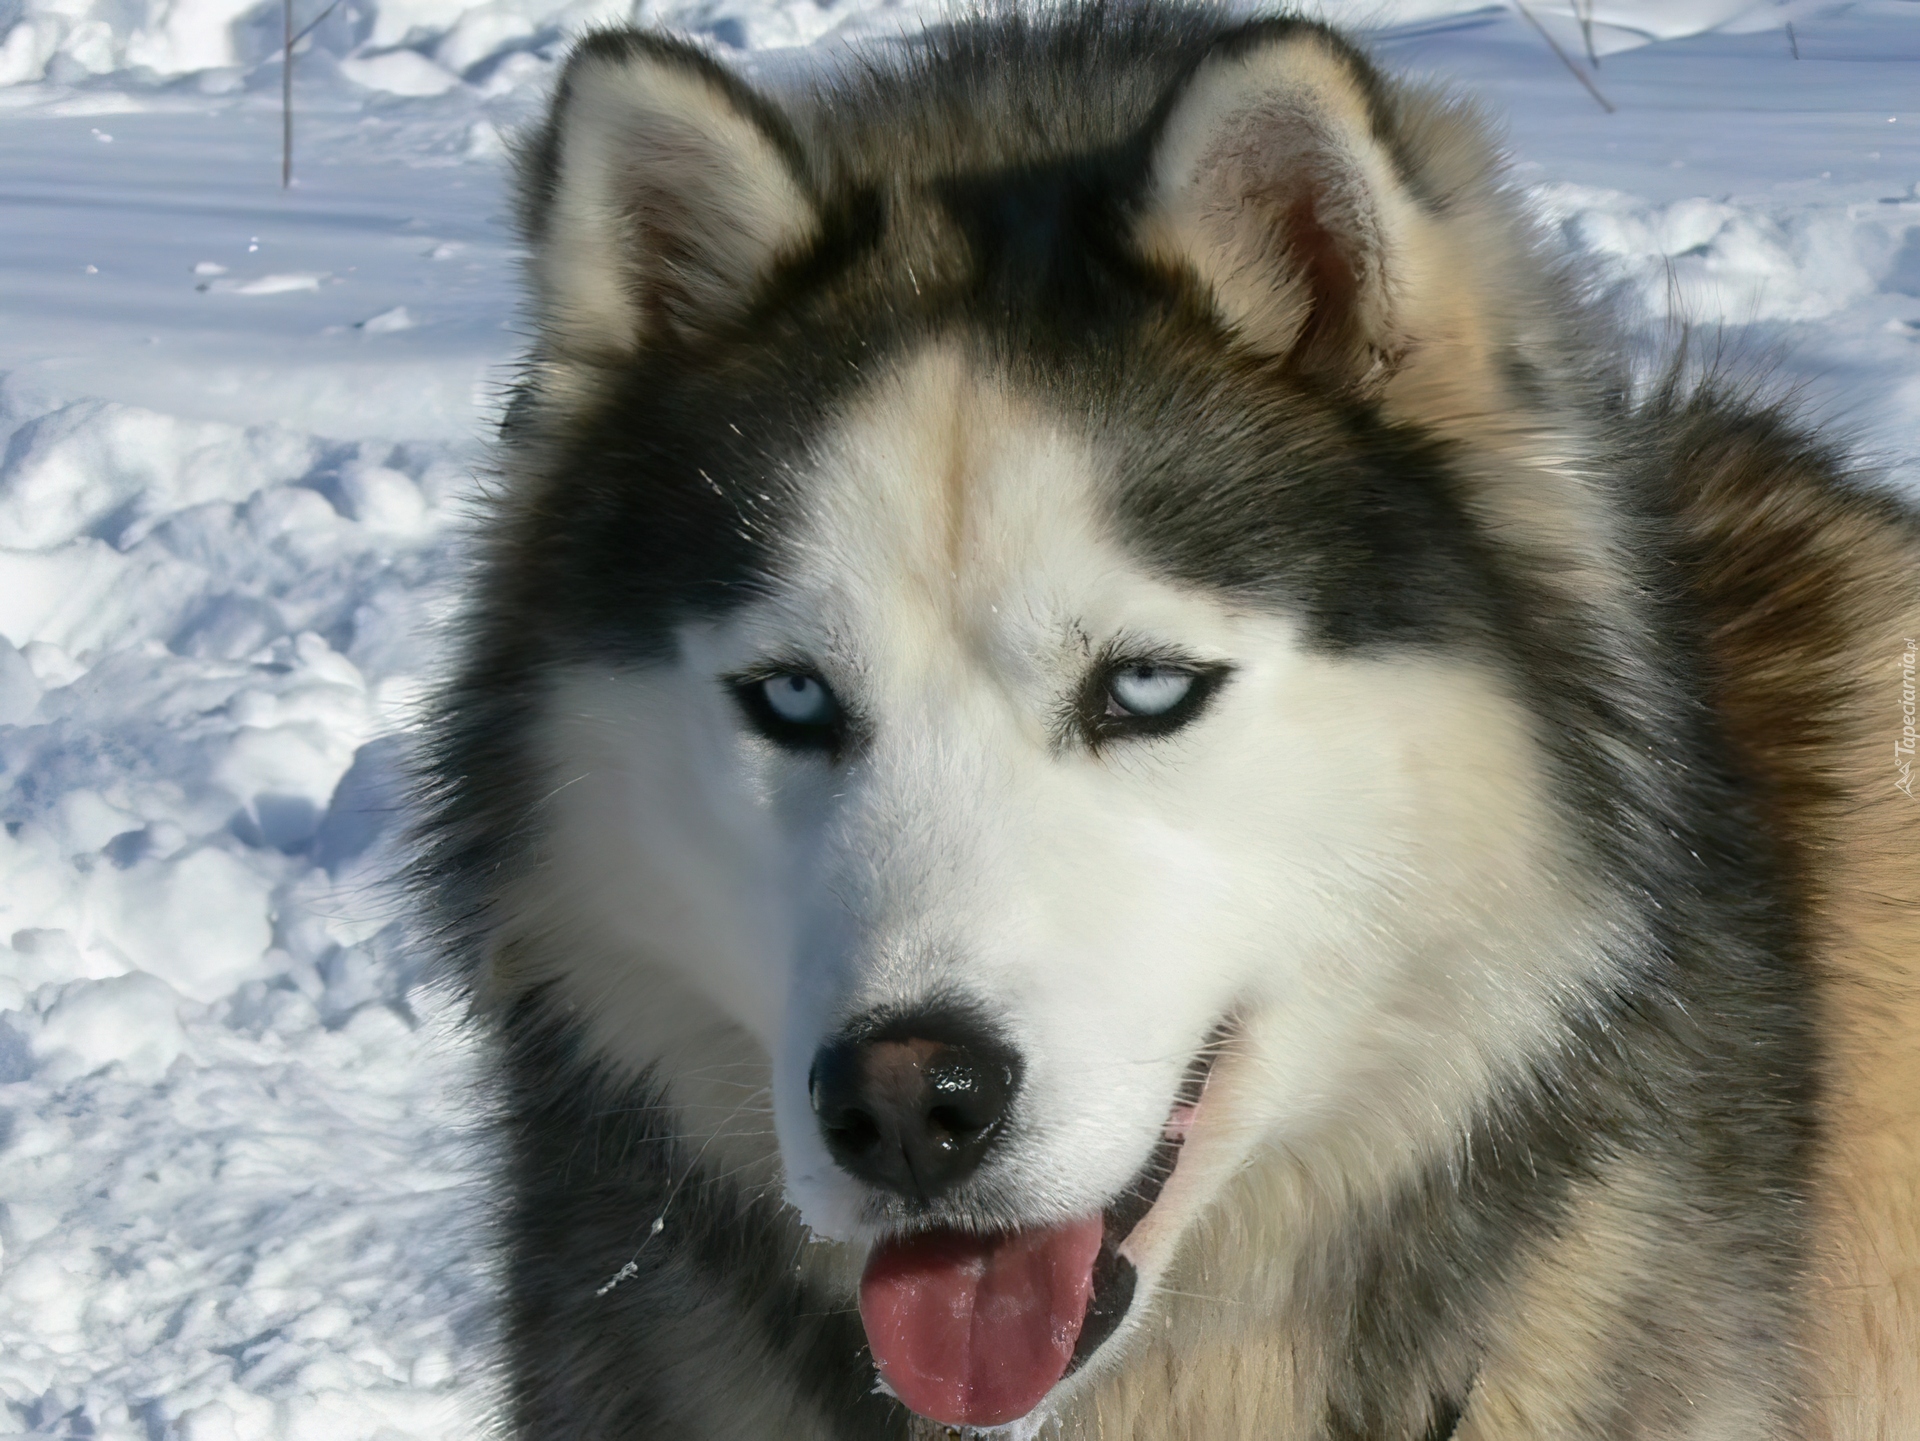 język, Siberian Husky, śnieg